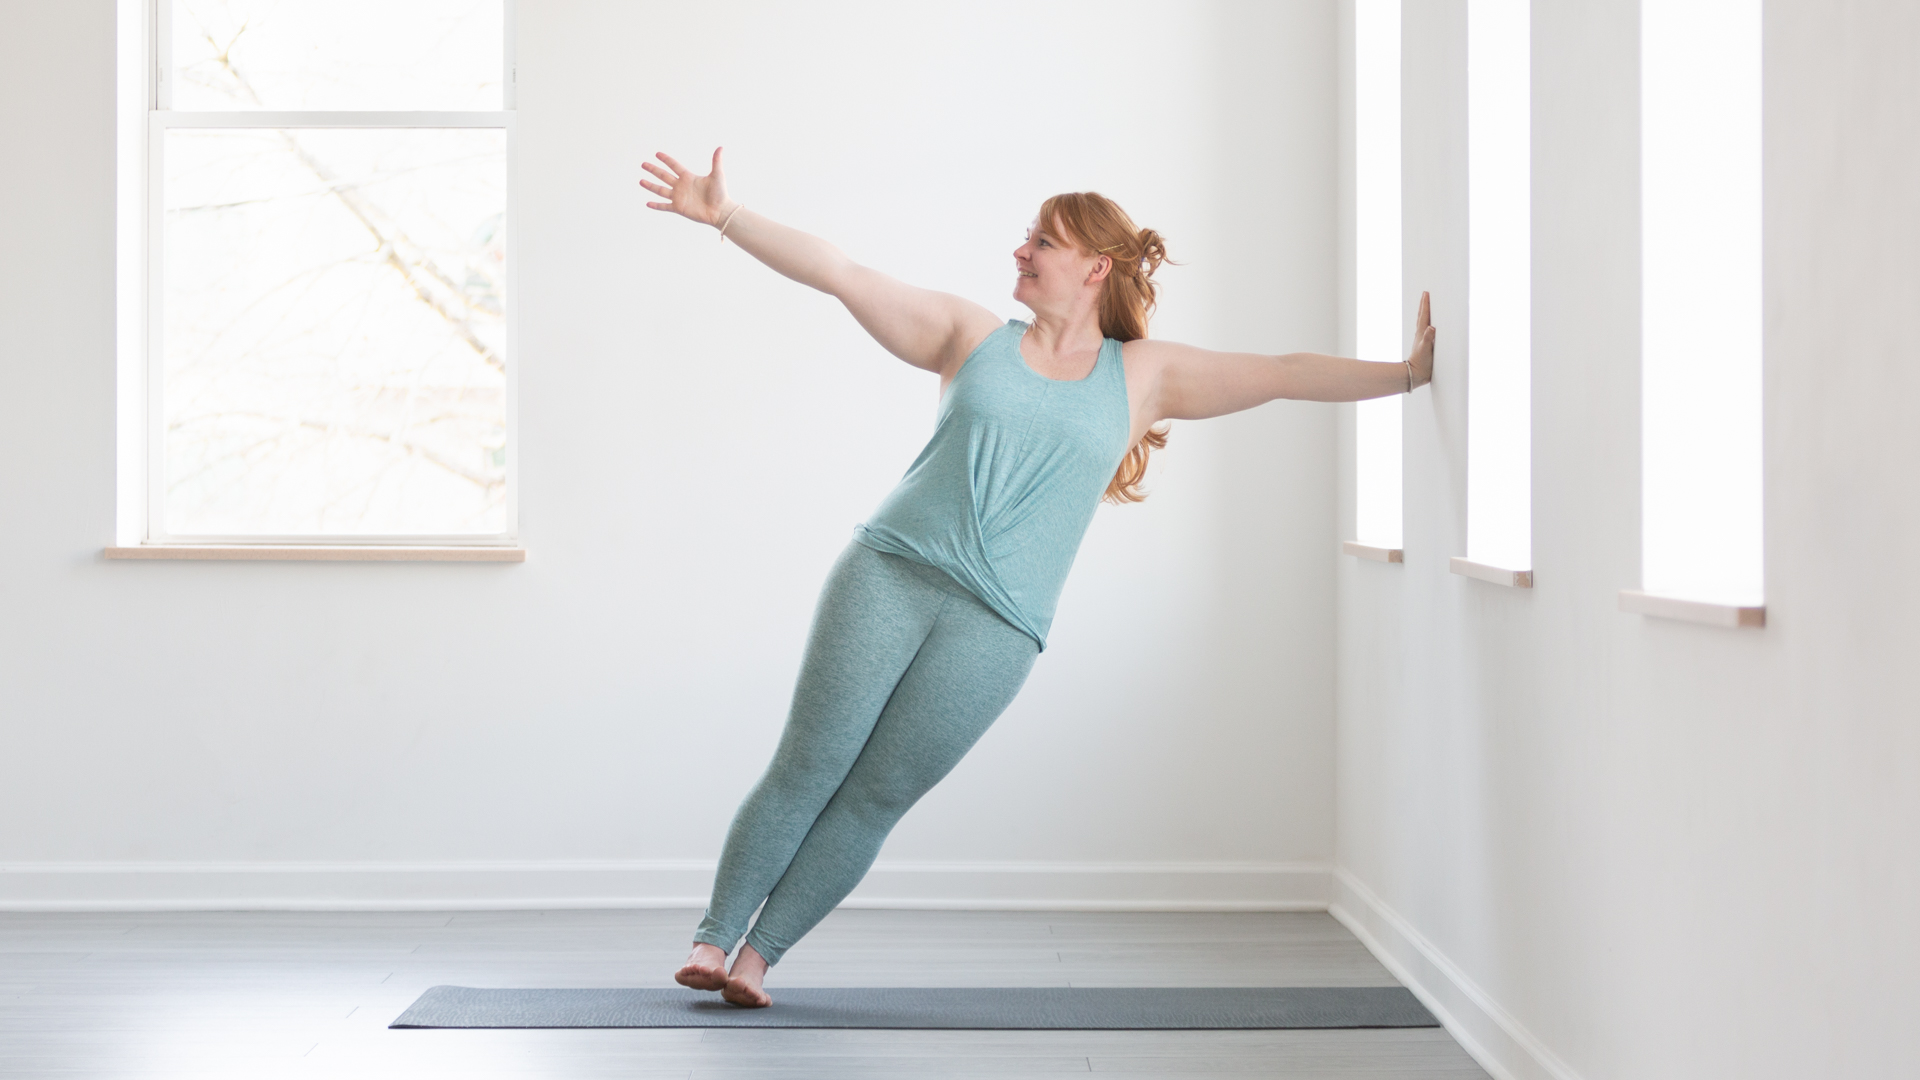 Yoga Poses: Side Plank | Natasha Rizopoulos | YogaUOnline - YouTube